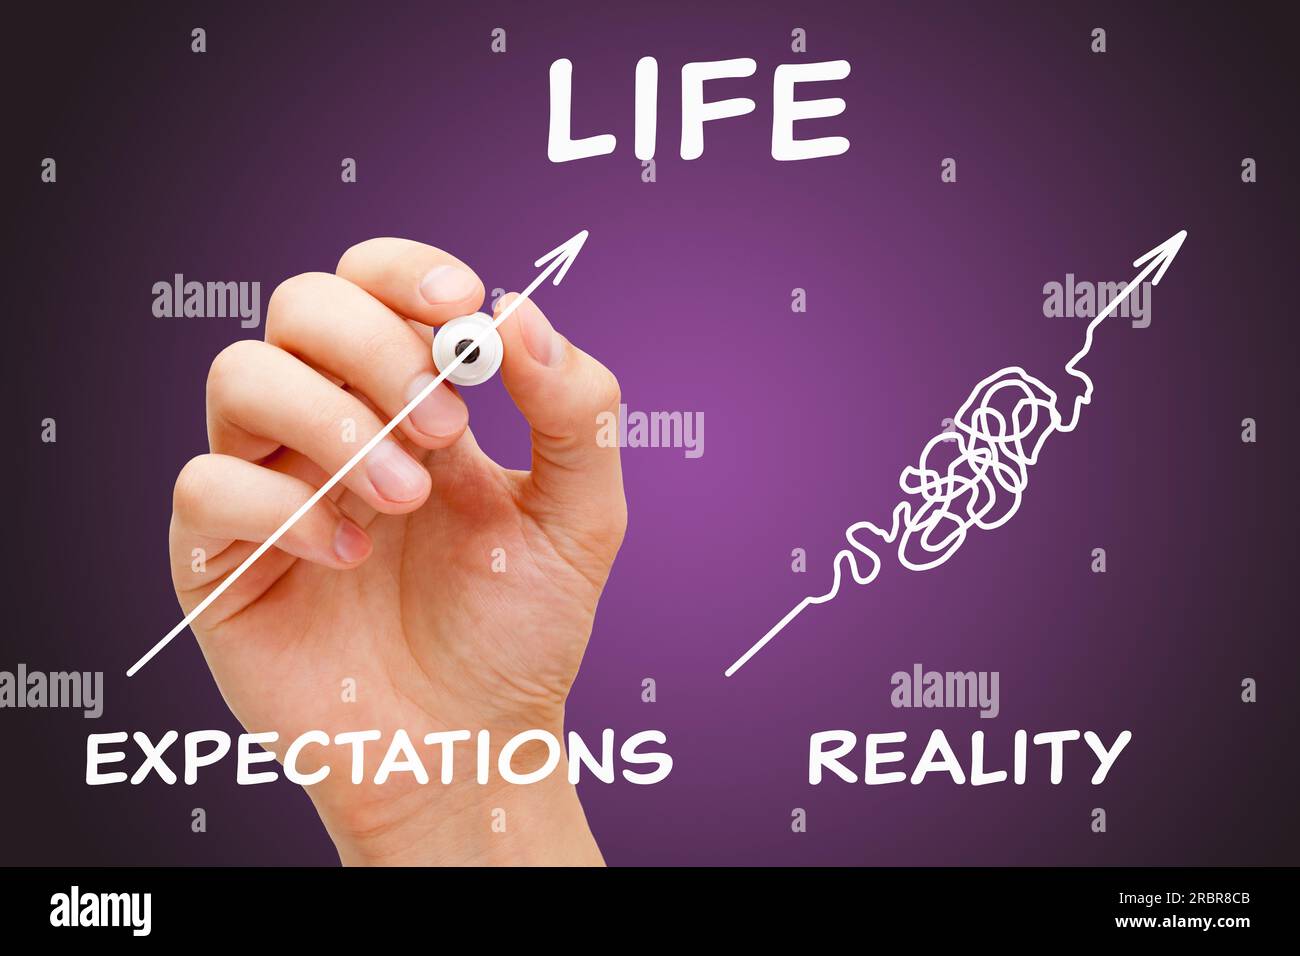 Disegnare a mano un concetto sulla differenza tra le aspettative di vita e la realtà. Scegli aspettative realistiche su come dovrebbe essere la vita. Foto Stock